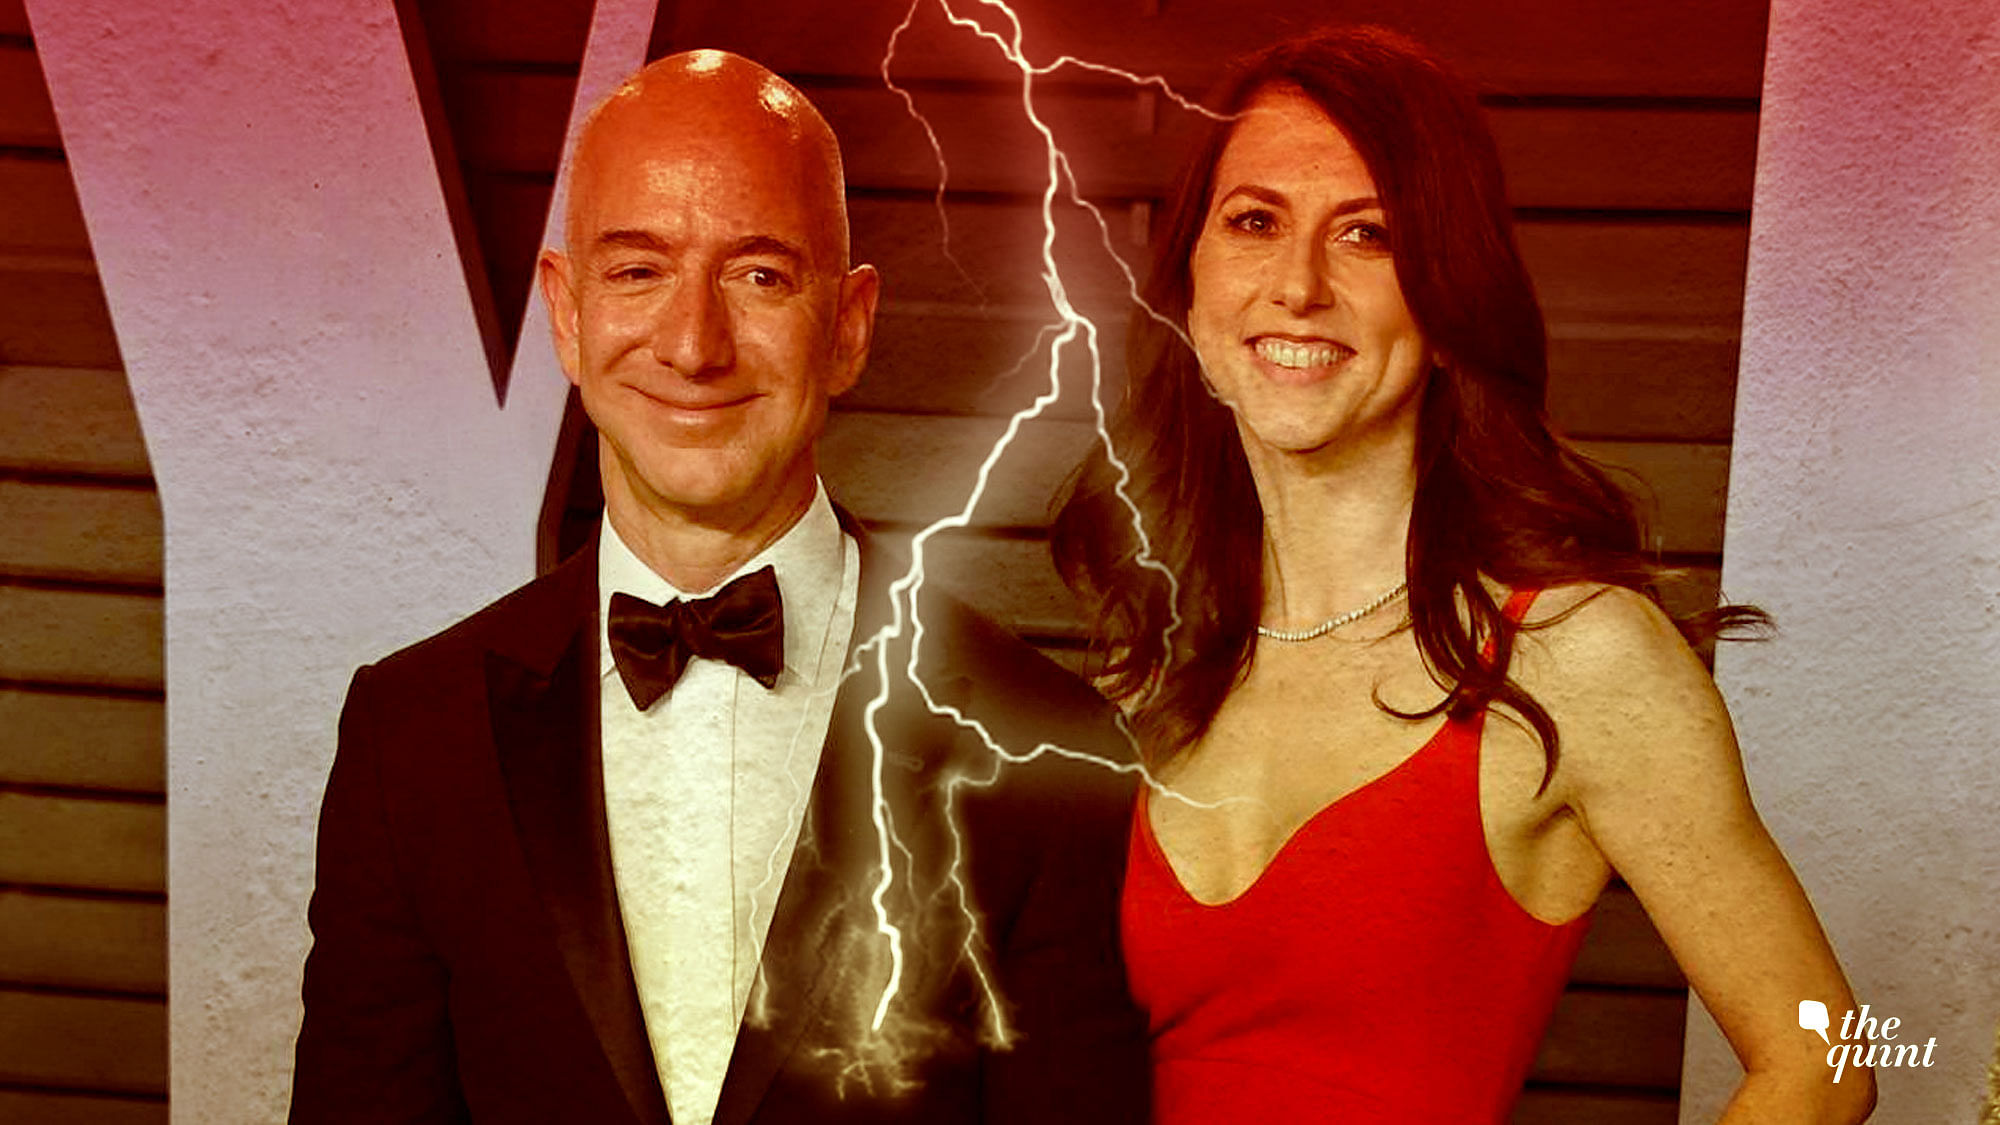 File photo of Jeff Bezos with wife MacKenzie Bezos.